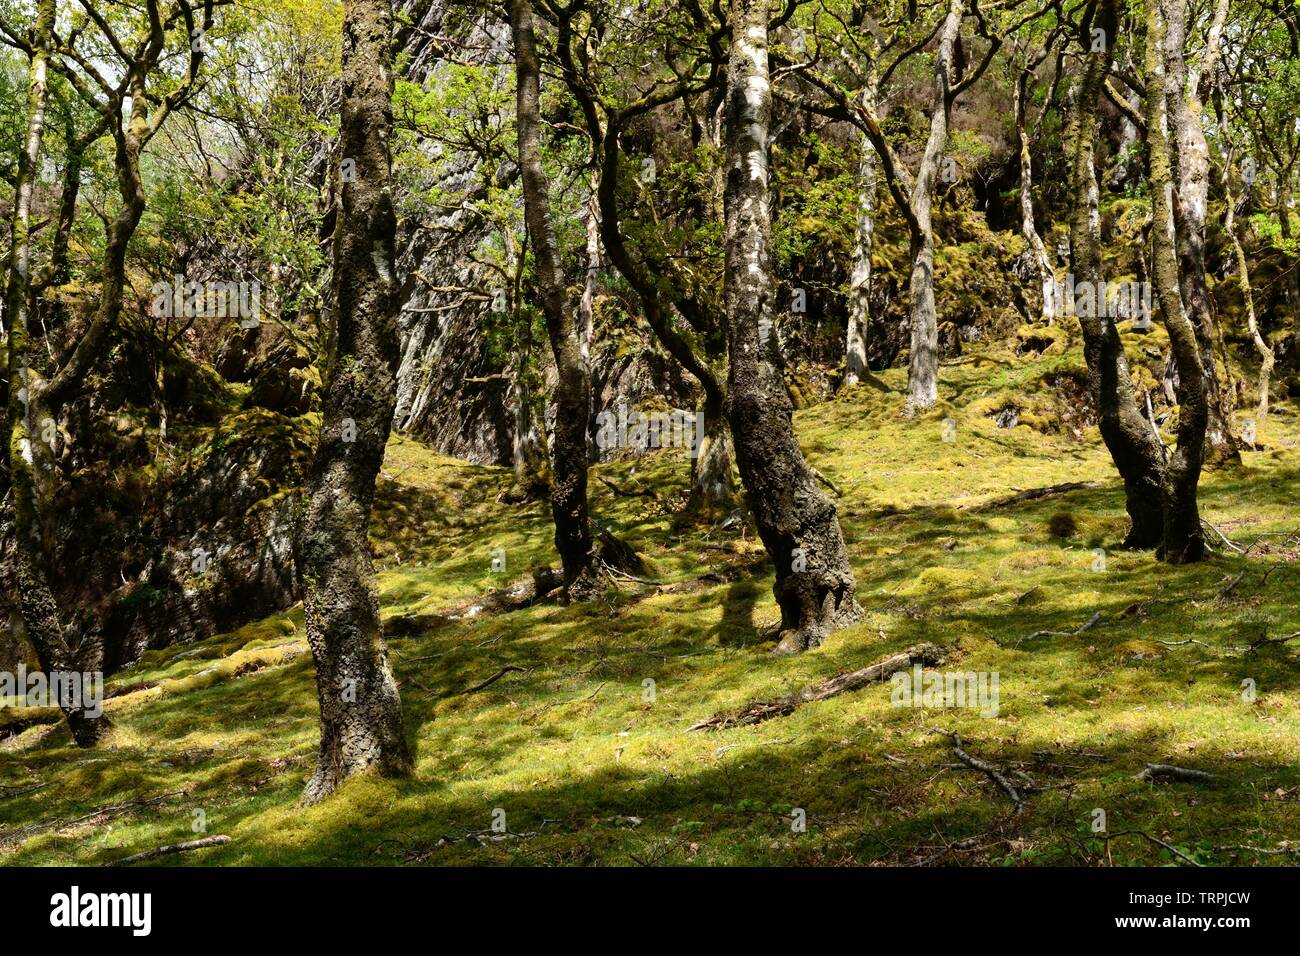 Chêne et bois d'aulne de la réserve RSPB Gwenffrwd-Dinas Elenydd Ystradffin Zone Spéciale de Conservation Carmarthenshire Carmarthen Wales Cymru UK Banque D'Images